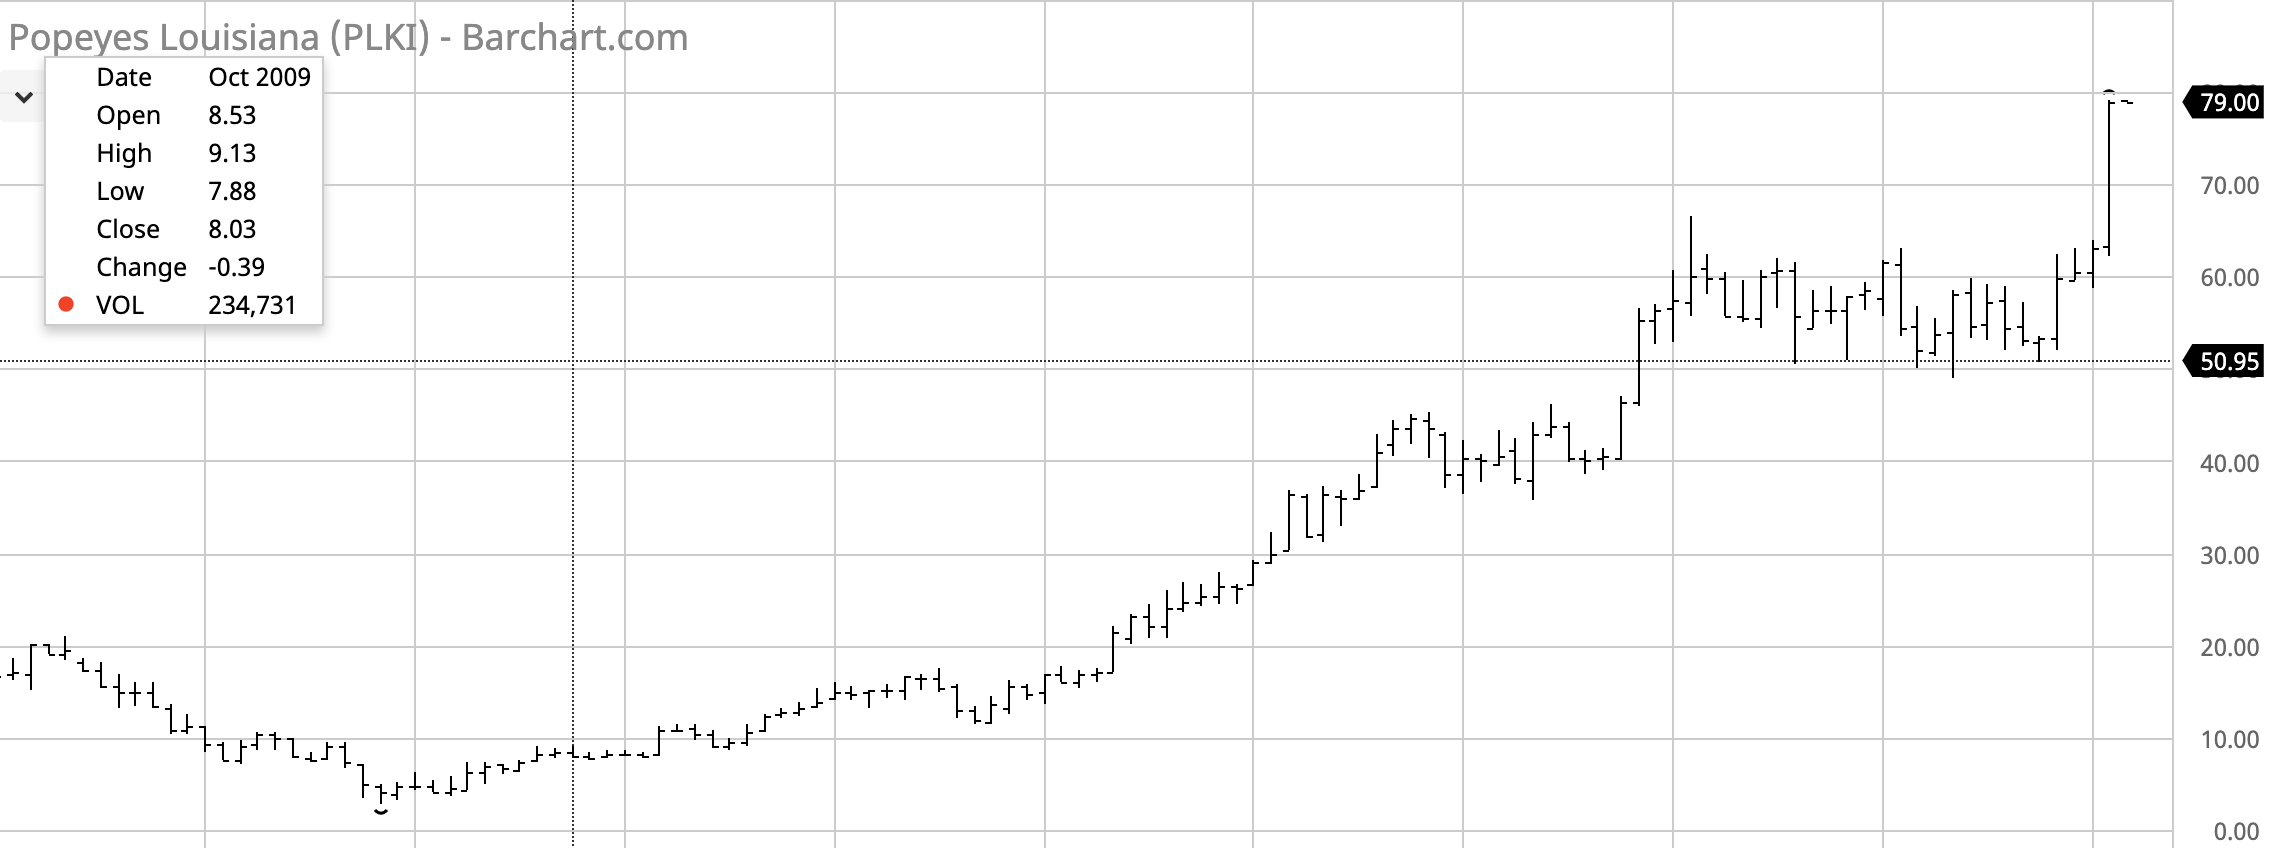 Plki Stock Chart